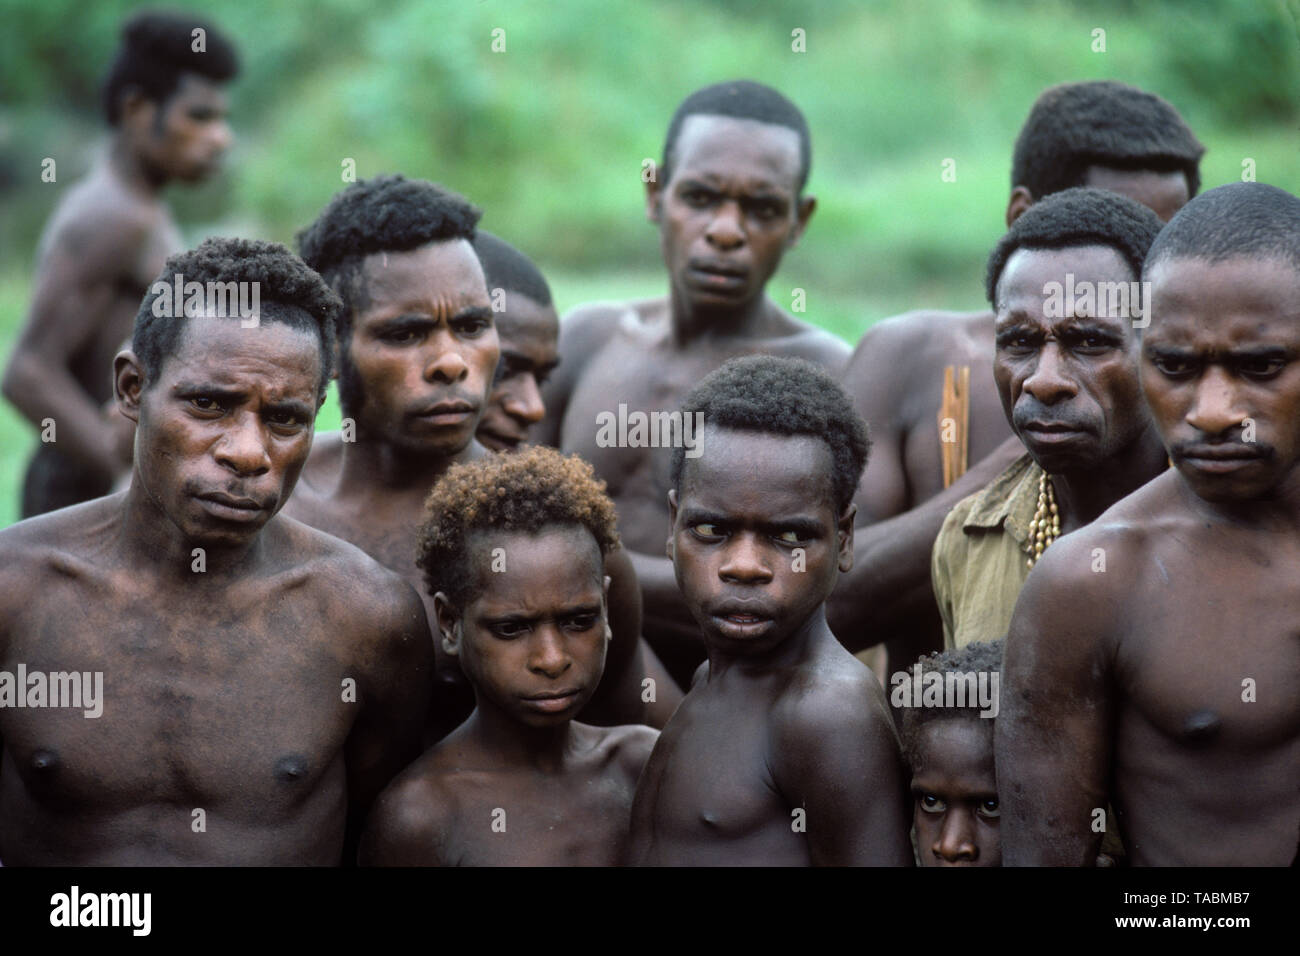 Asmat Personen: ethnische Gruppe leben in der Provinz Papua in Indonesien, entlang der Arafura Meer. Asmat Männern und Jungen, Dorf von Pirien. Foto Stockfoto